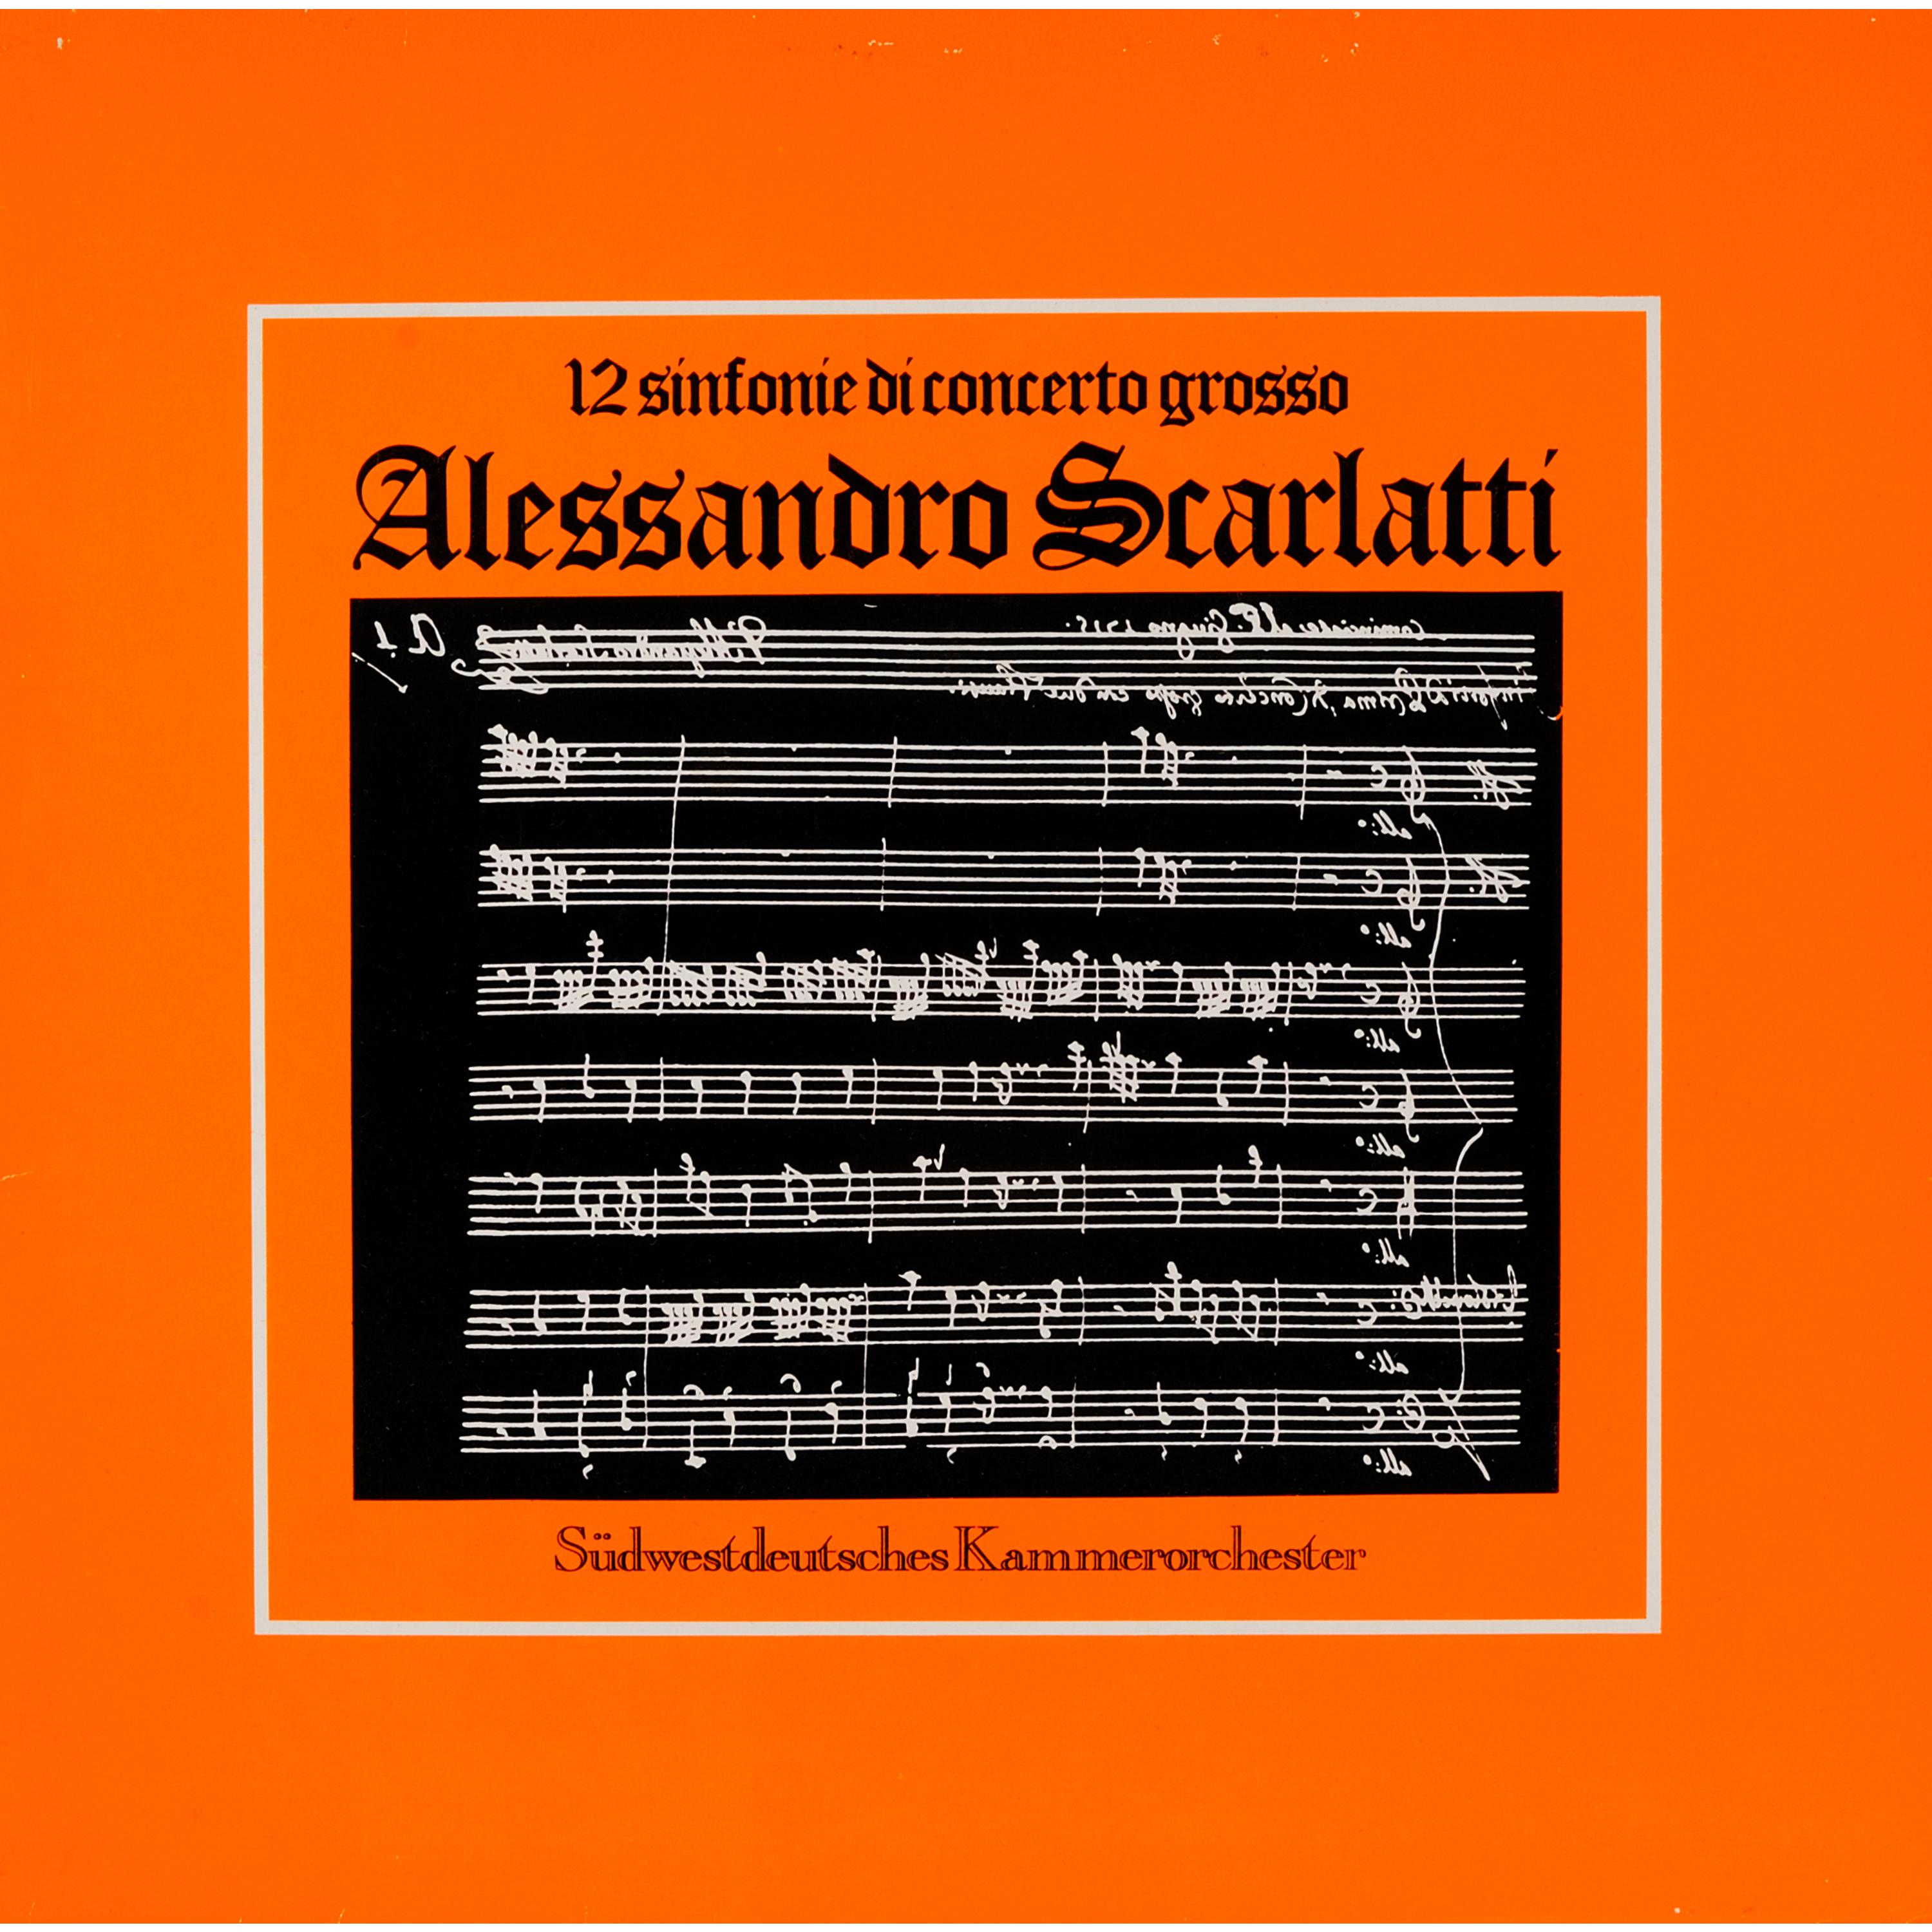 Sinfonia di concerto grosso No. 2 in D Major: Spirituoso - Adagio - Allegro - Presto